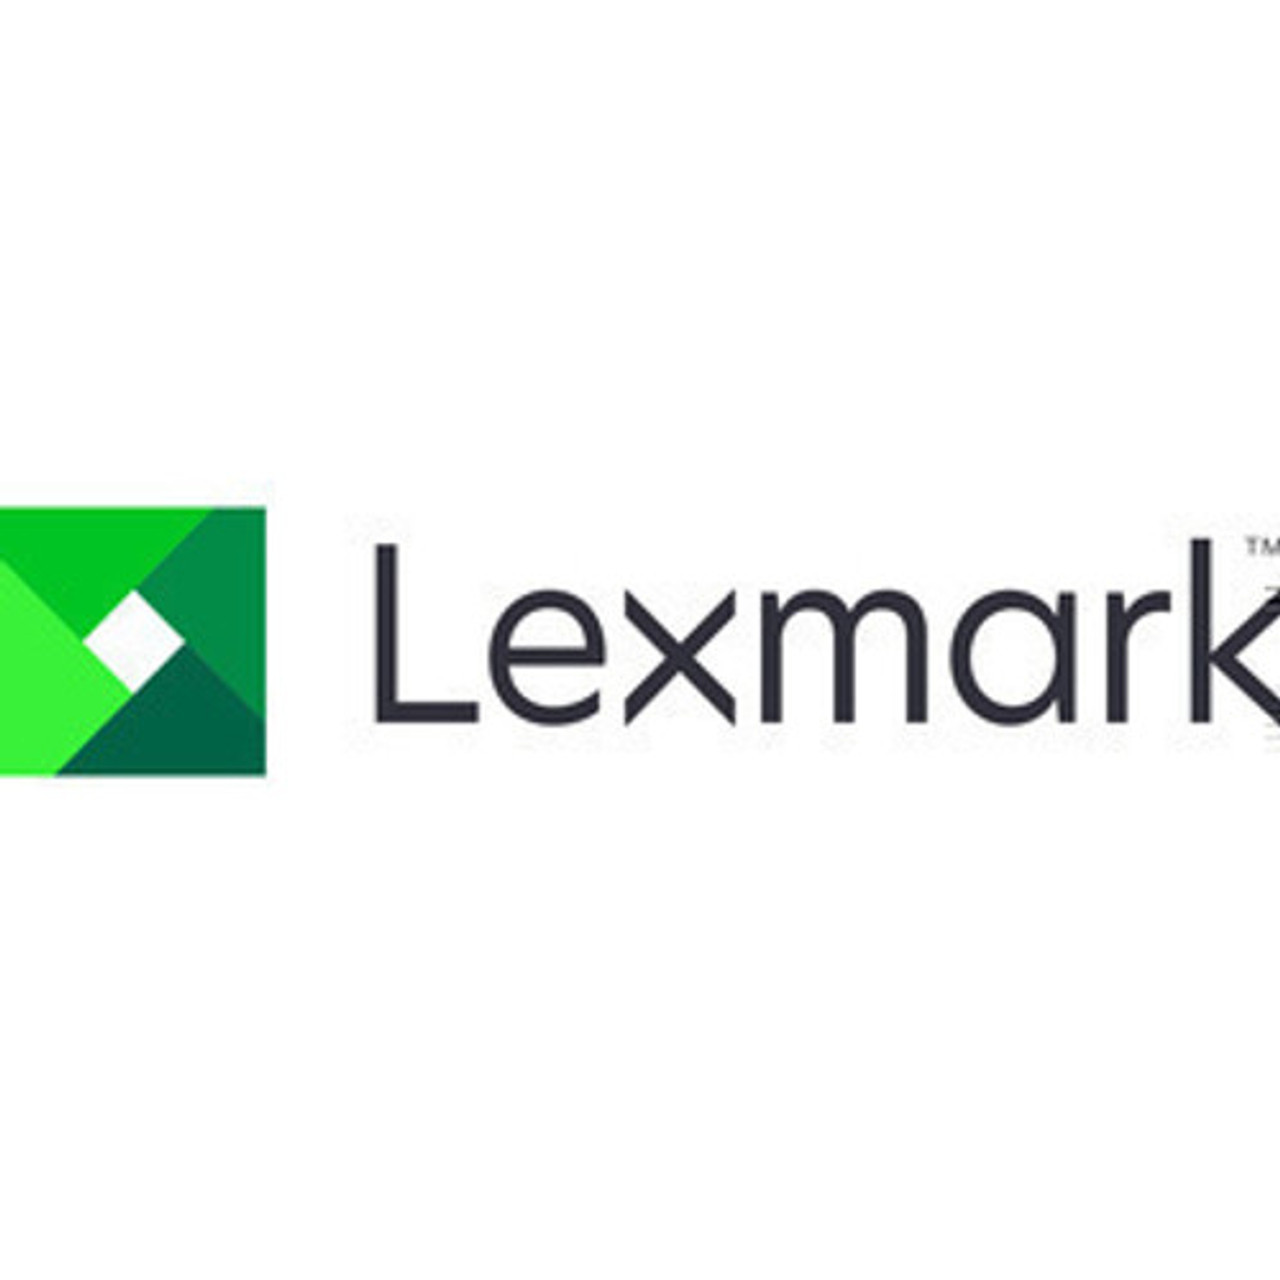 Lexmark 550-SHEET TRAY - 38S3110